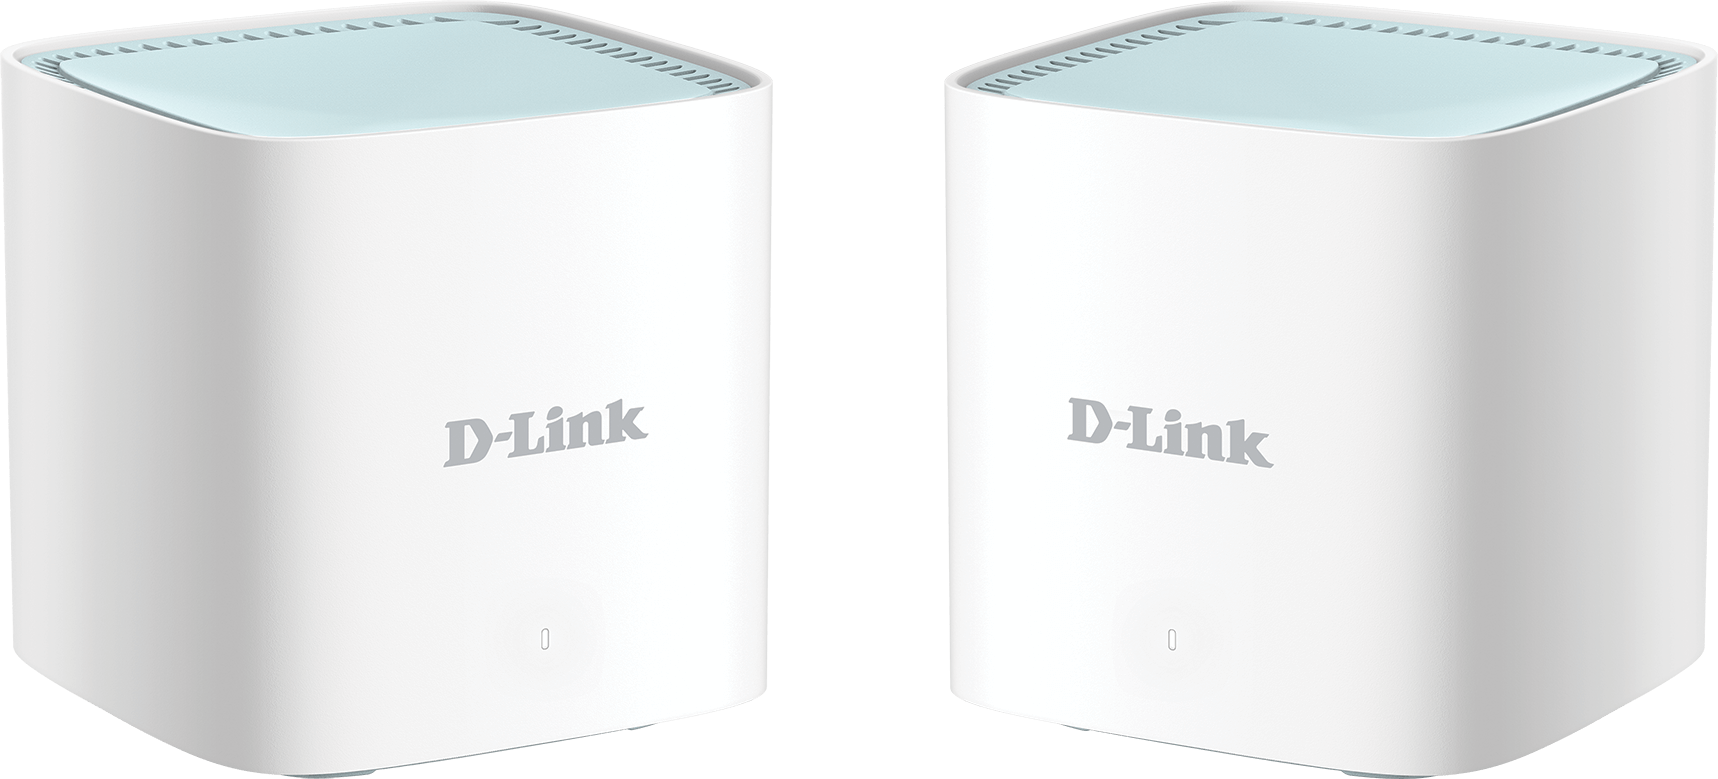 790069461187 D-LINK M15-2 EAGLE PRO AI AX1500 Mesh System - 2 Pack Computer & IT,Netværk,Routere 20500243610 M15-2